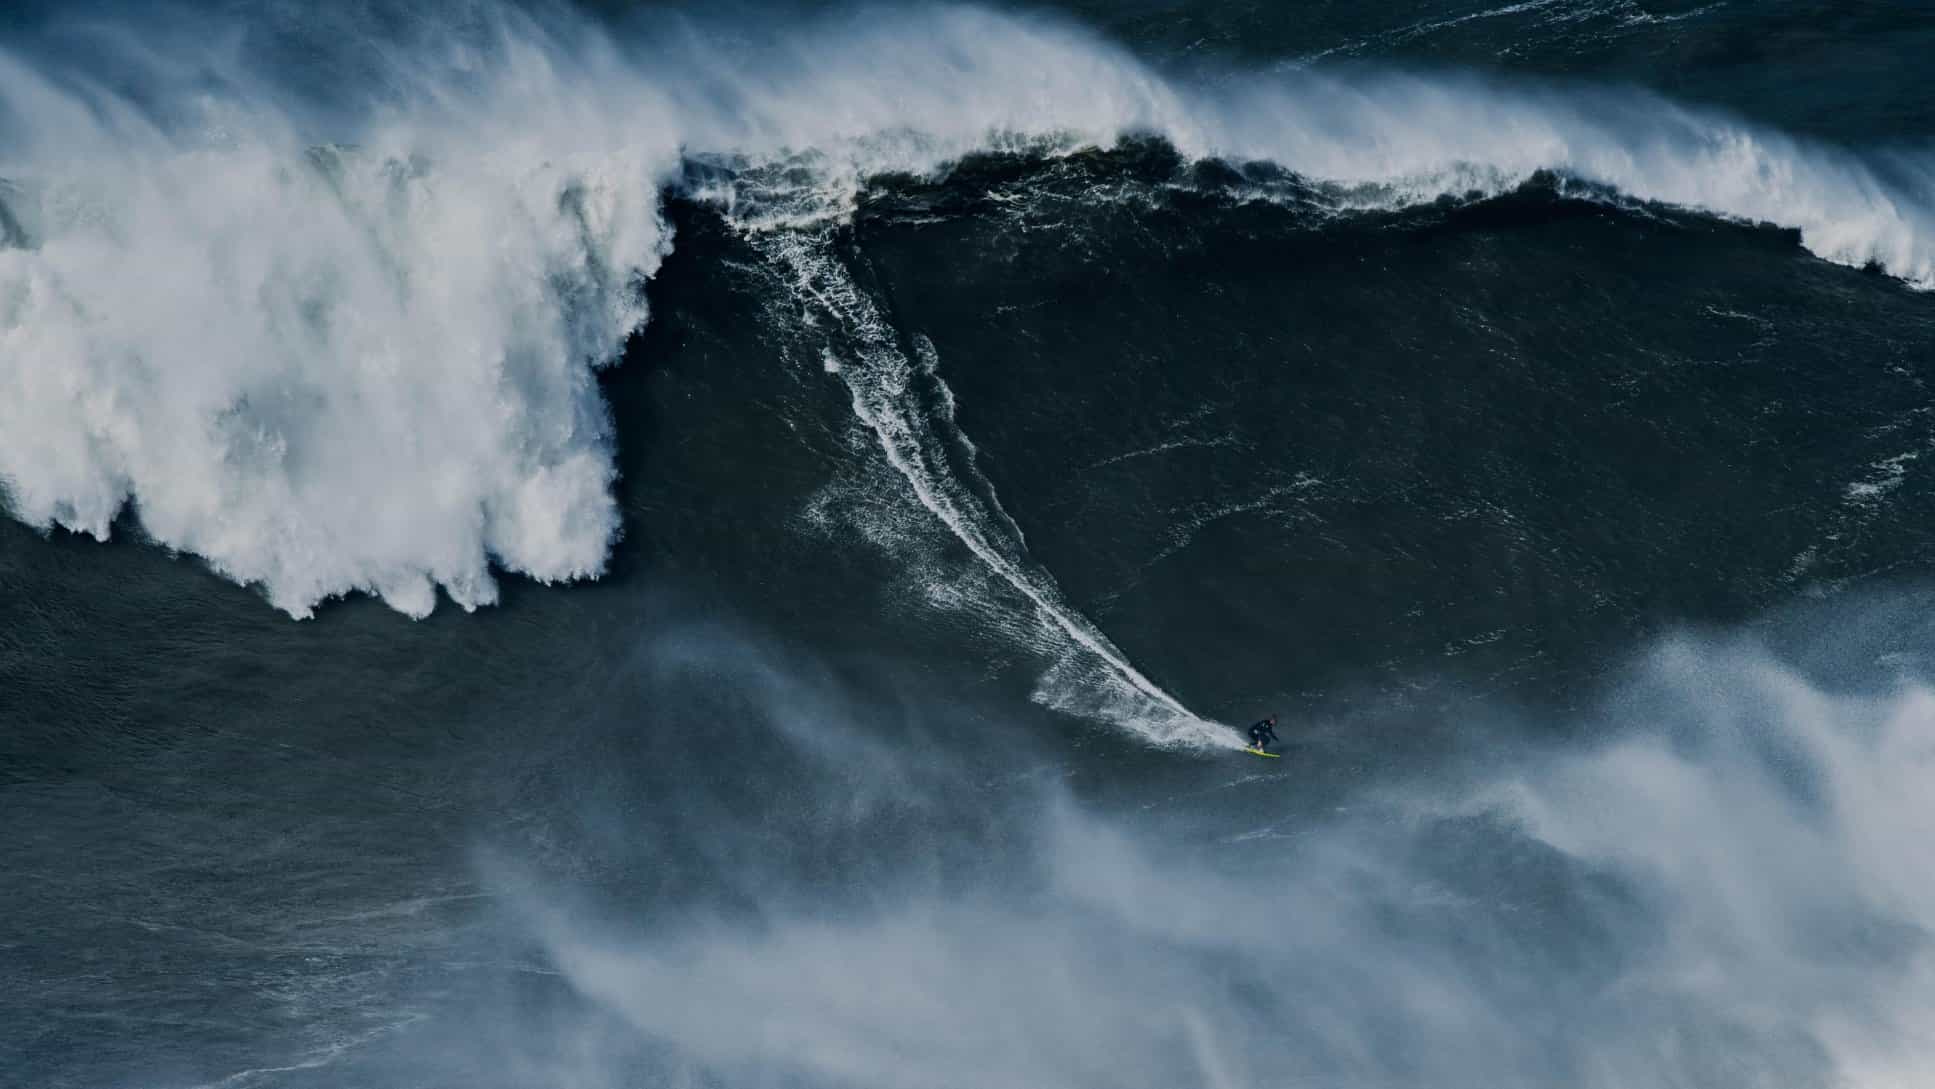 O recorde da maior onda foi recentemente estabelecido em Nazaré, Portugal